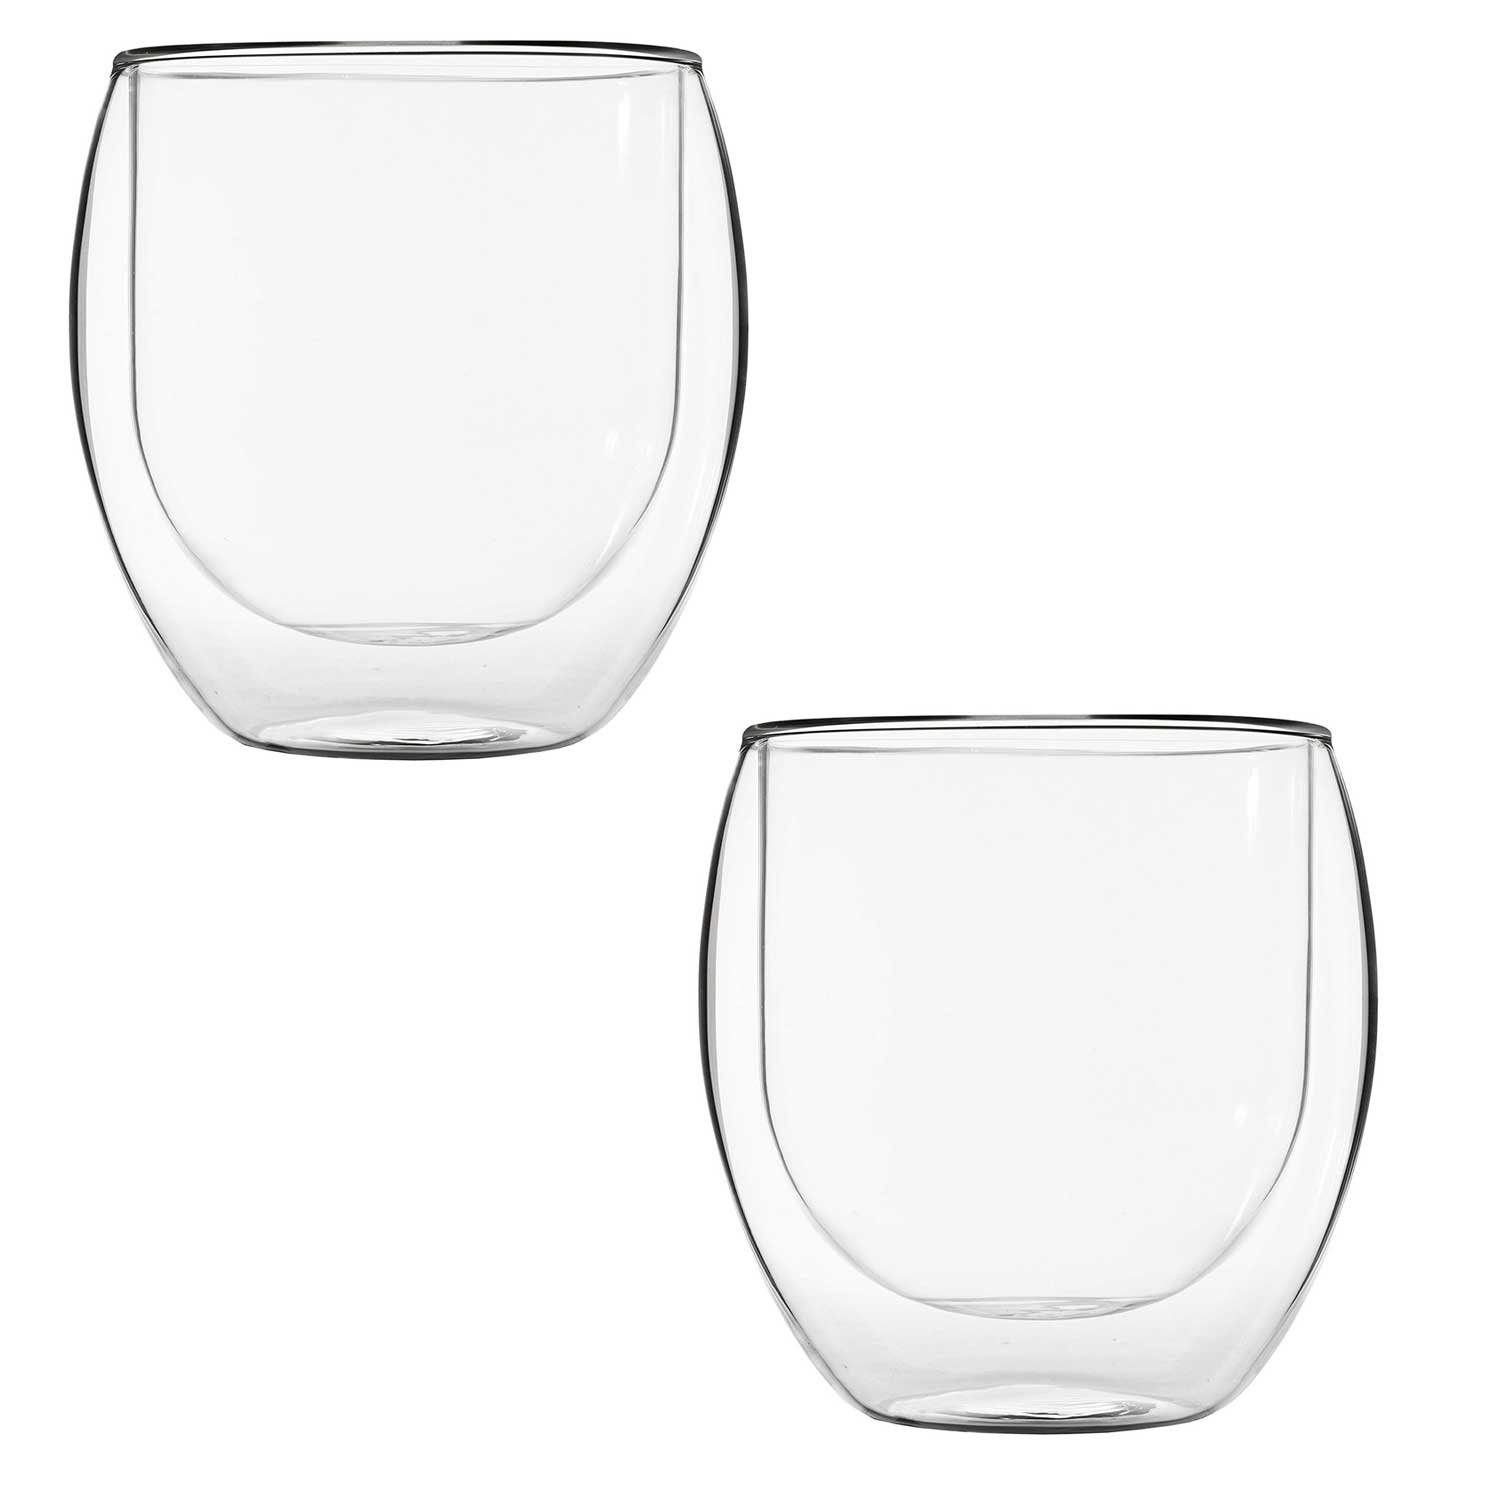 6 Für Wasserglas, T24 Doppelwandiges Glas Thermogläser-Set, Spülmaschinenfest Gläser Doppelwand, ml teilig Heißgetränke 410 geeignet, Set Glas, Doppelwandig